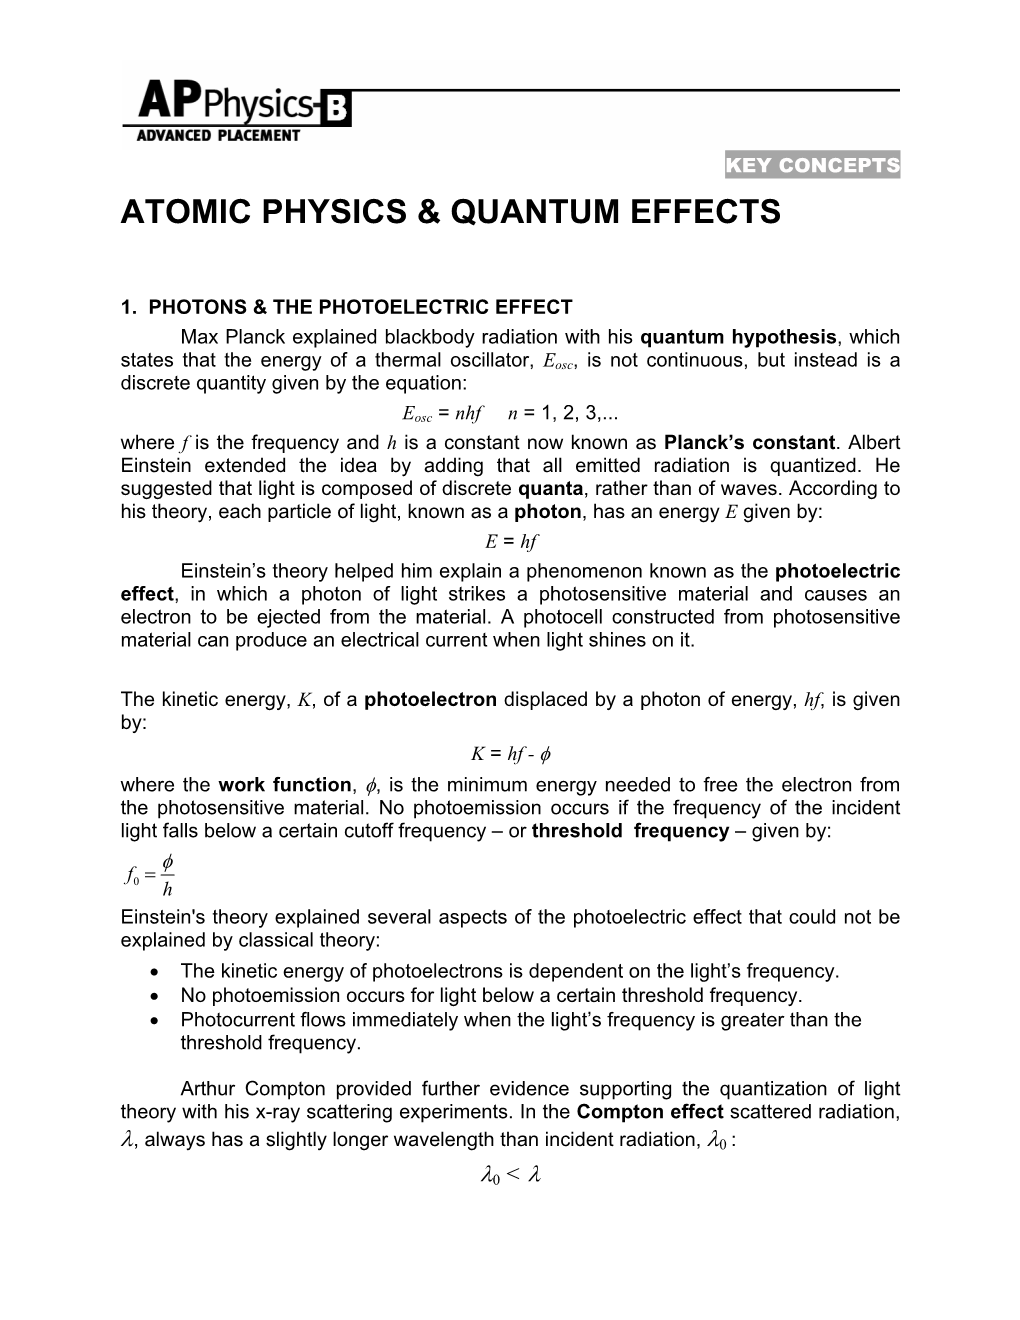 Atomic Physics & Quantum Effects